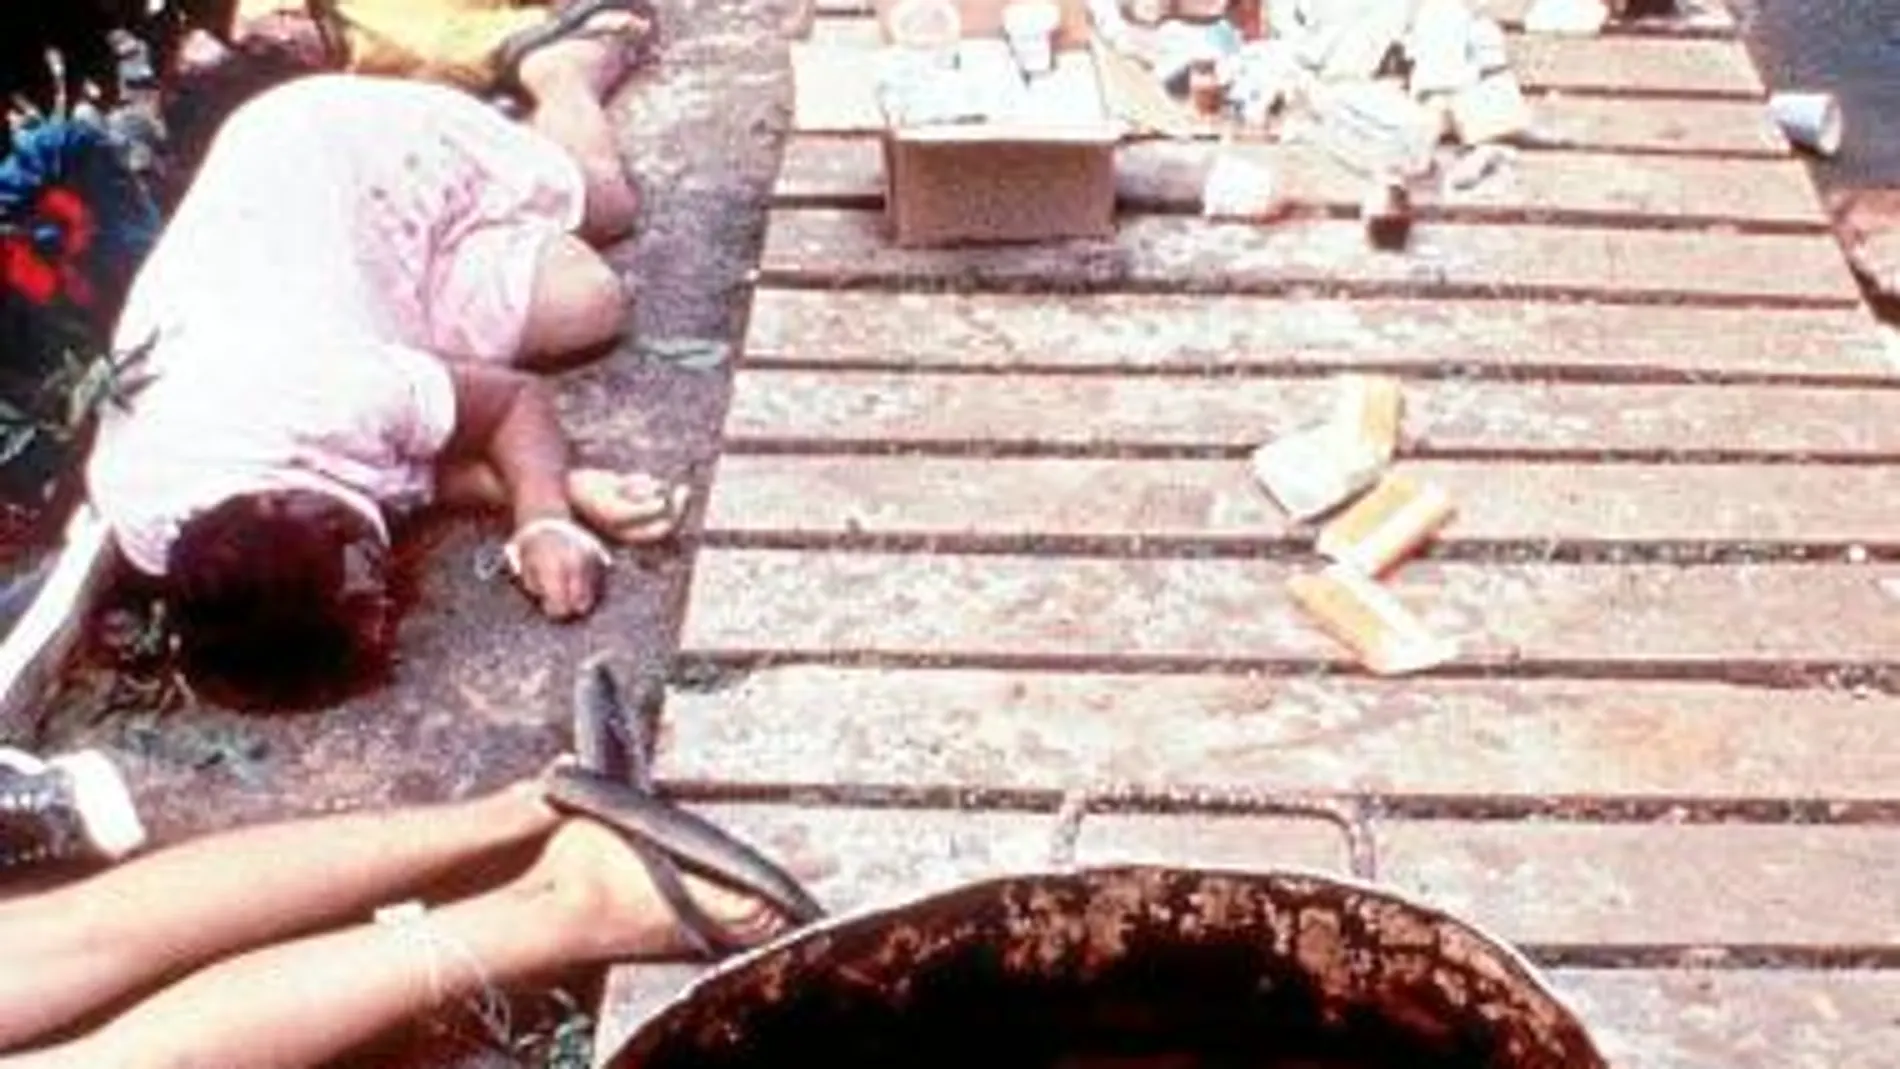 Una imagen del suicidio colectivo de 918 personas de la secta Peoples Temple en Guyana, en 1978